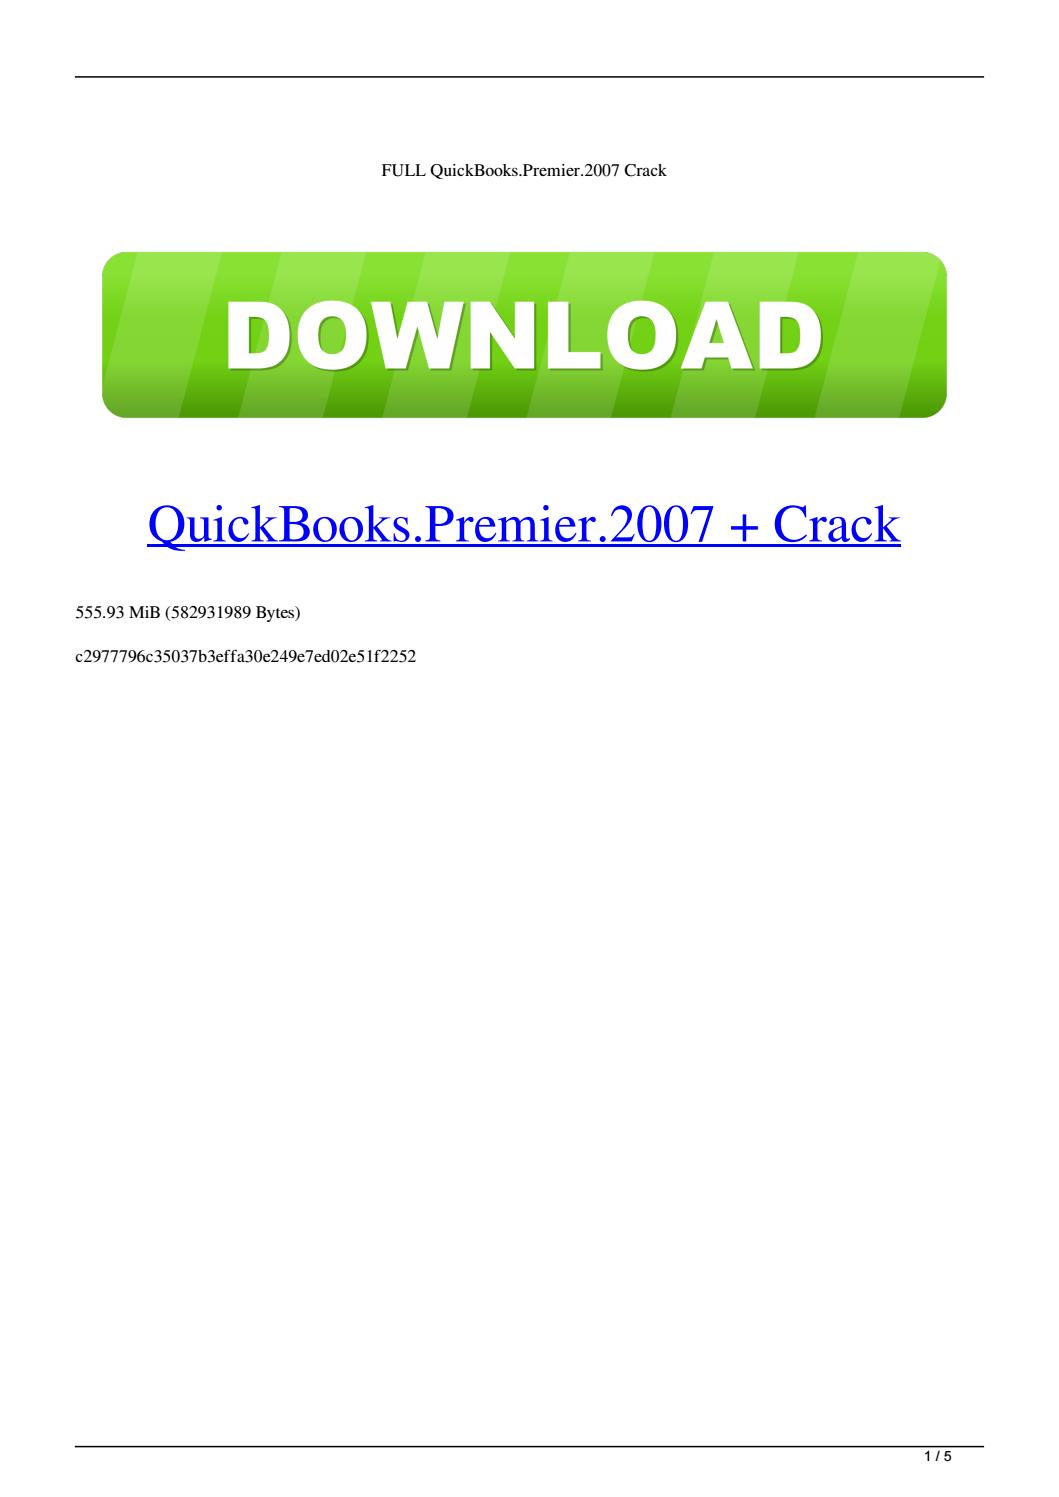 quickbooks pro 2008 unlock crack download